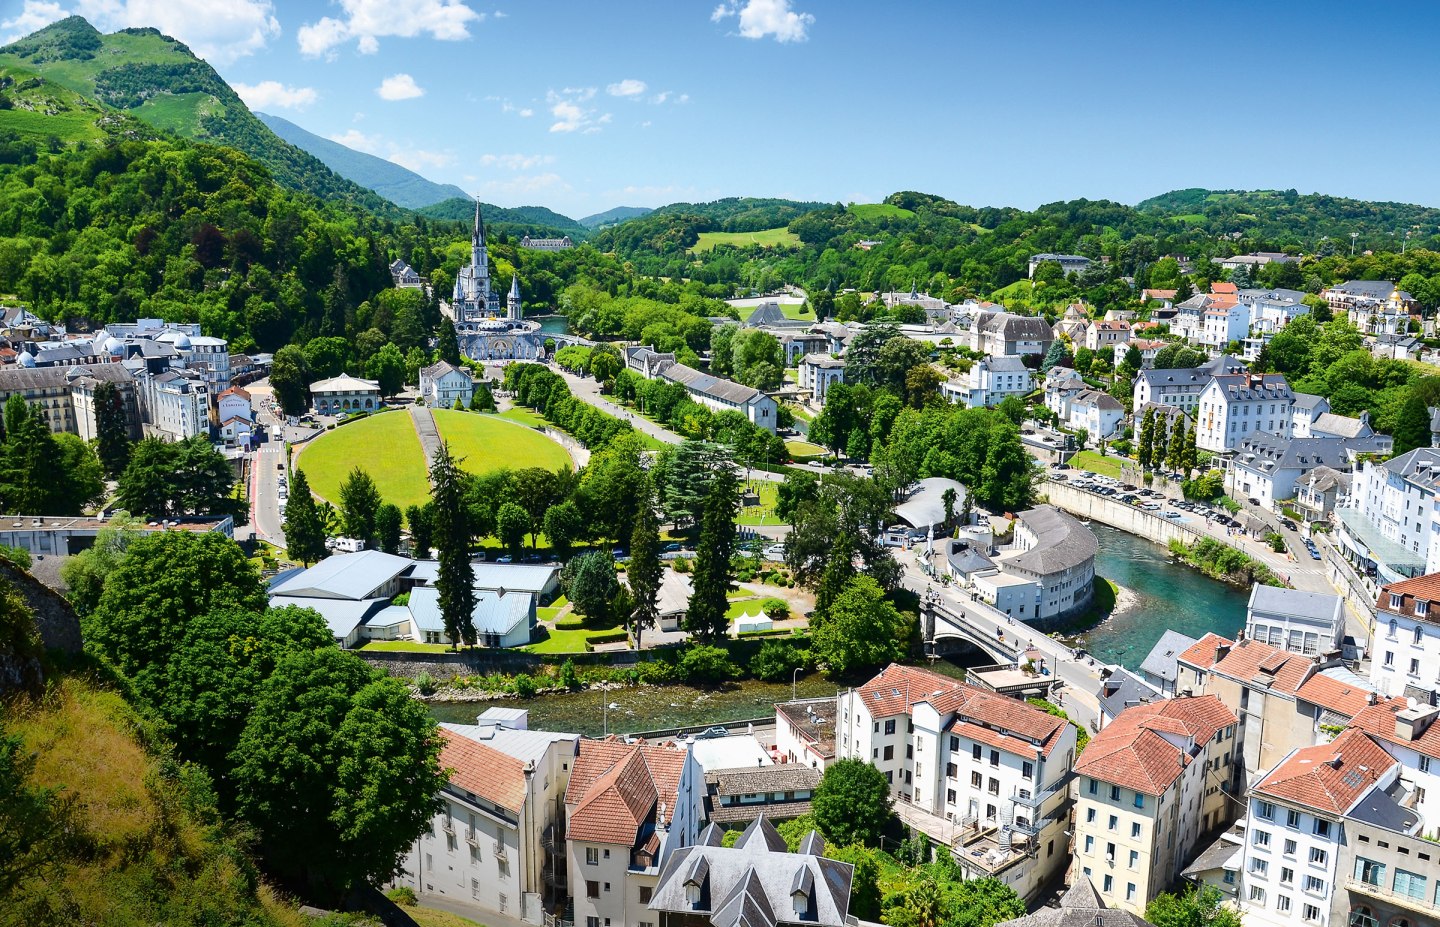 Blick auf Lourdes von der Burg aus, Frankreich, © istockphoto.com©Oks